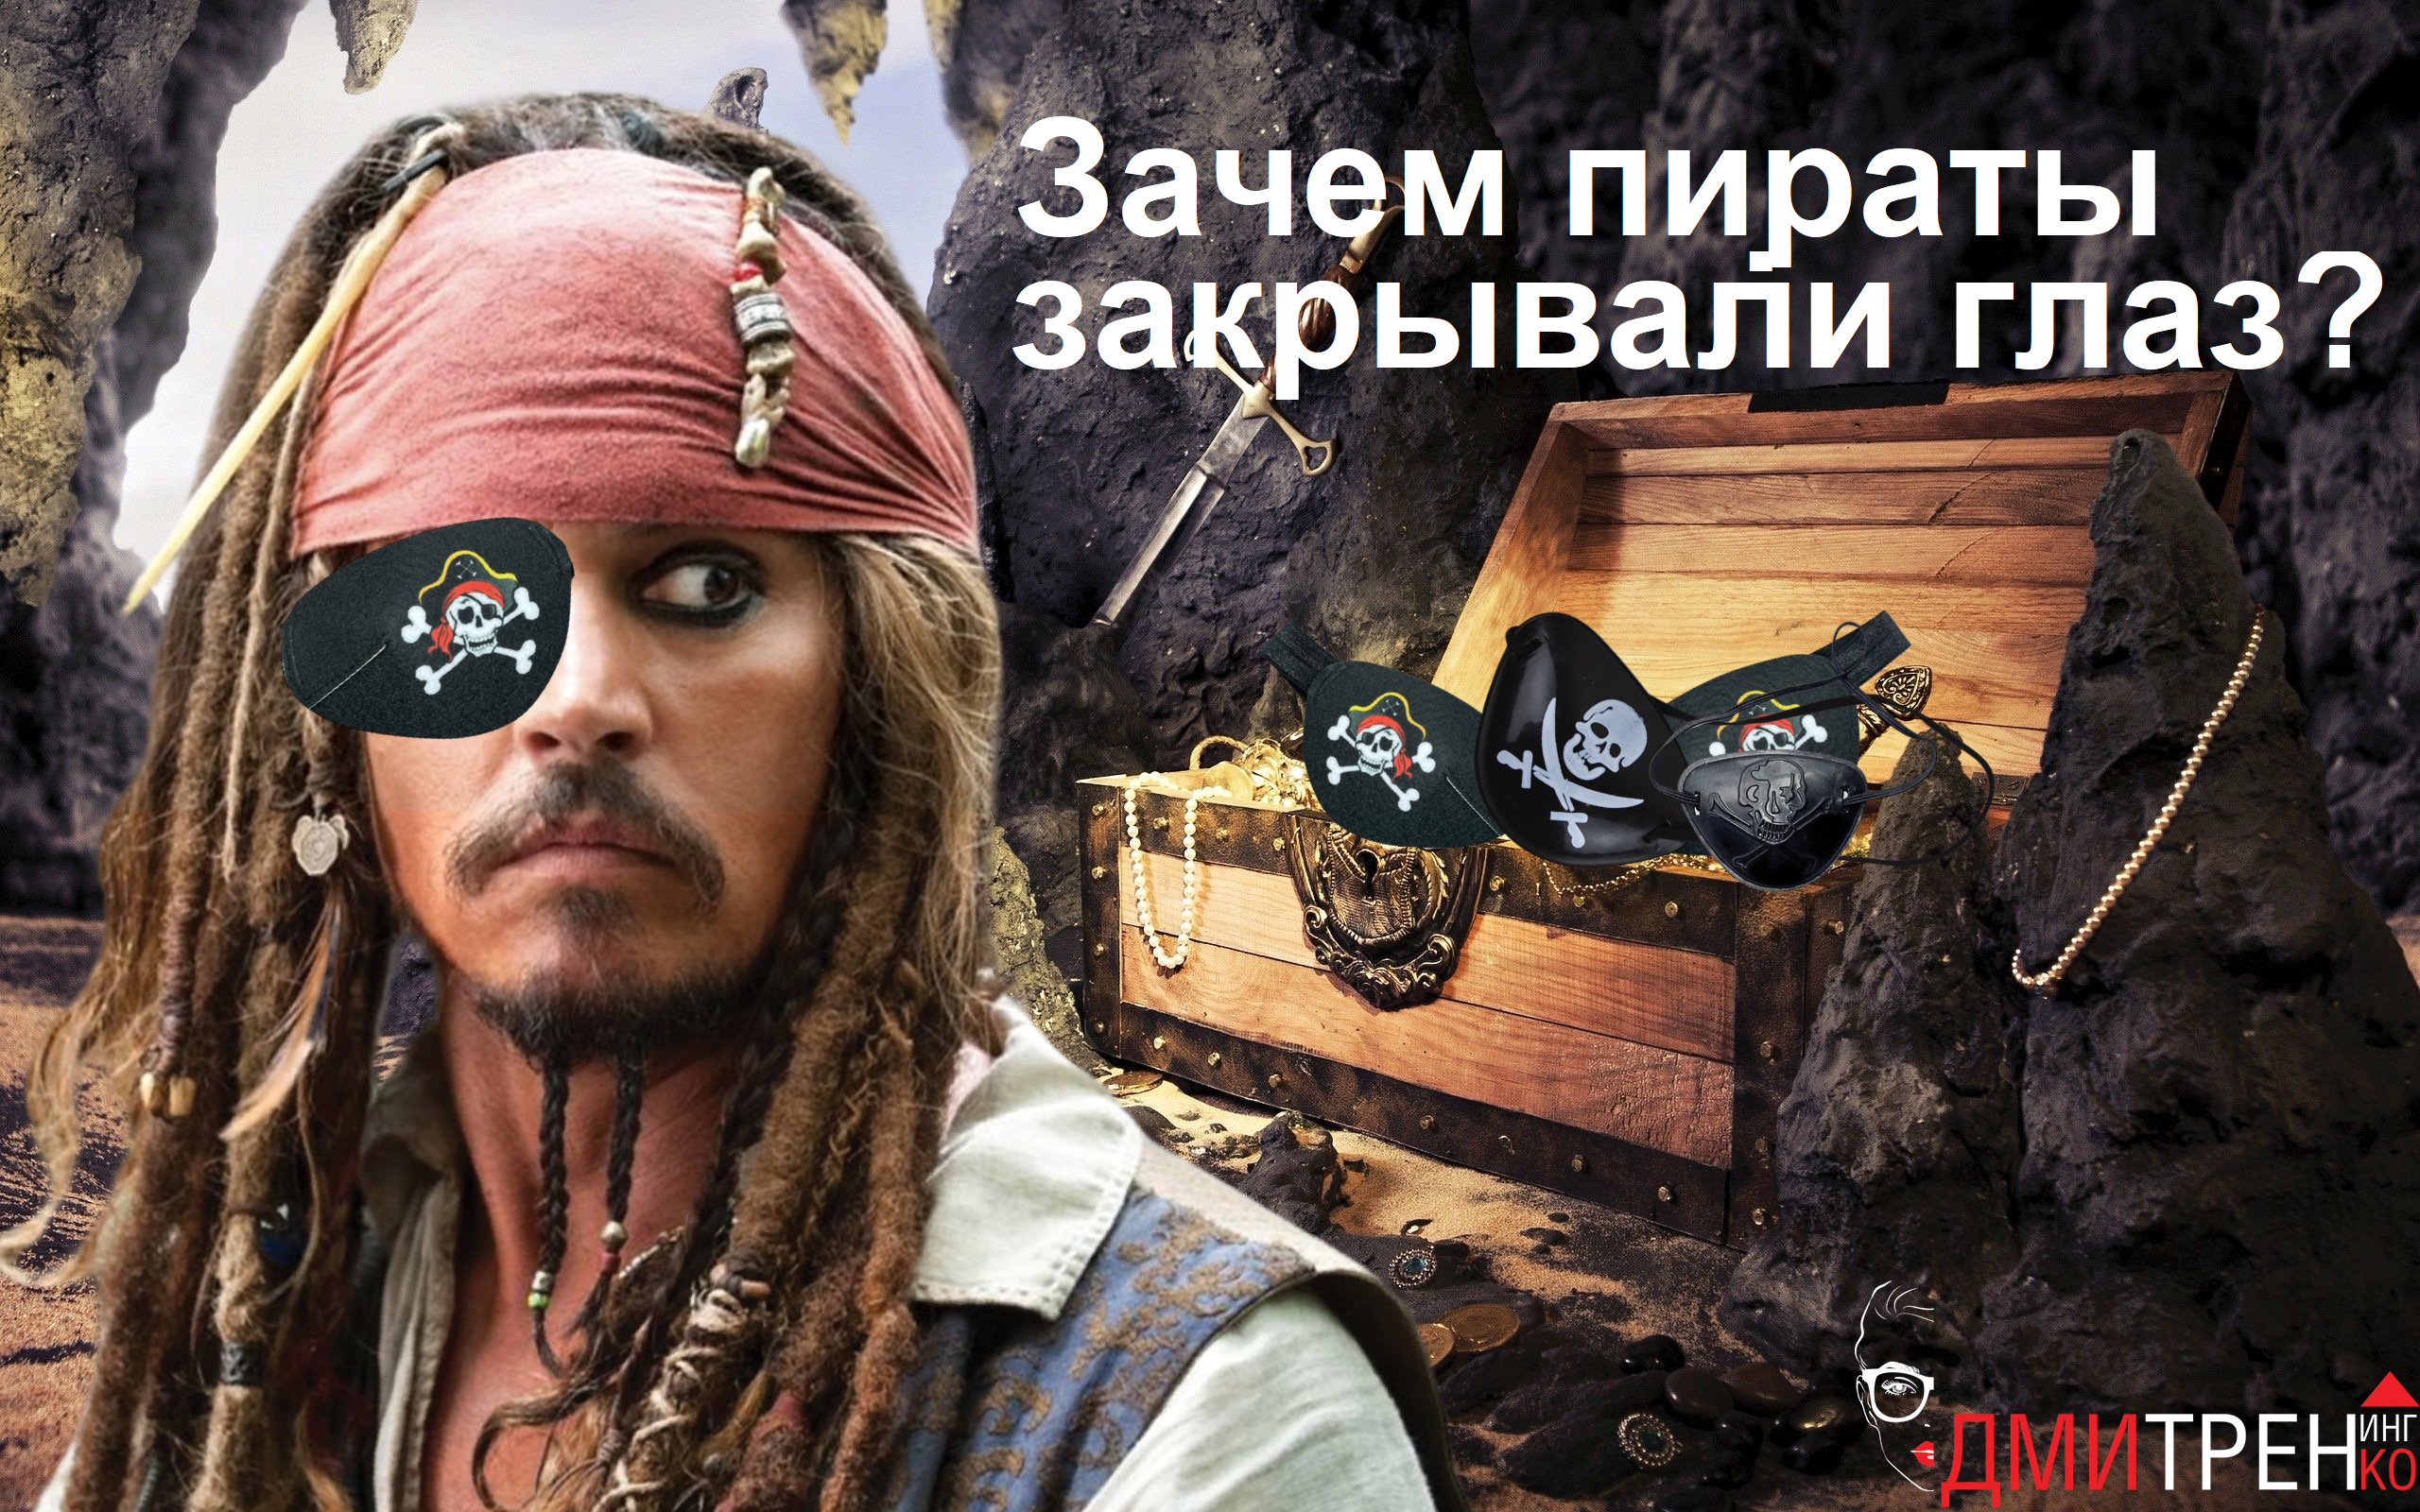 Пираты: сколько стоил глаз и зачем им повязки?